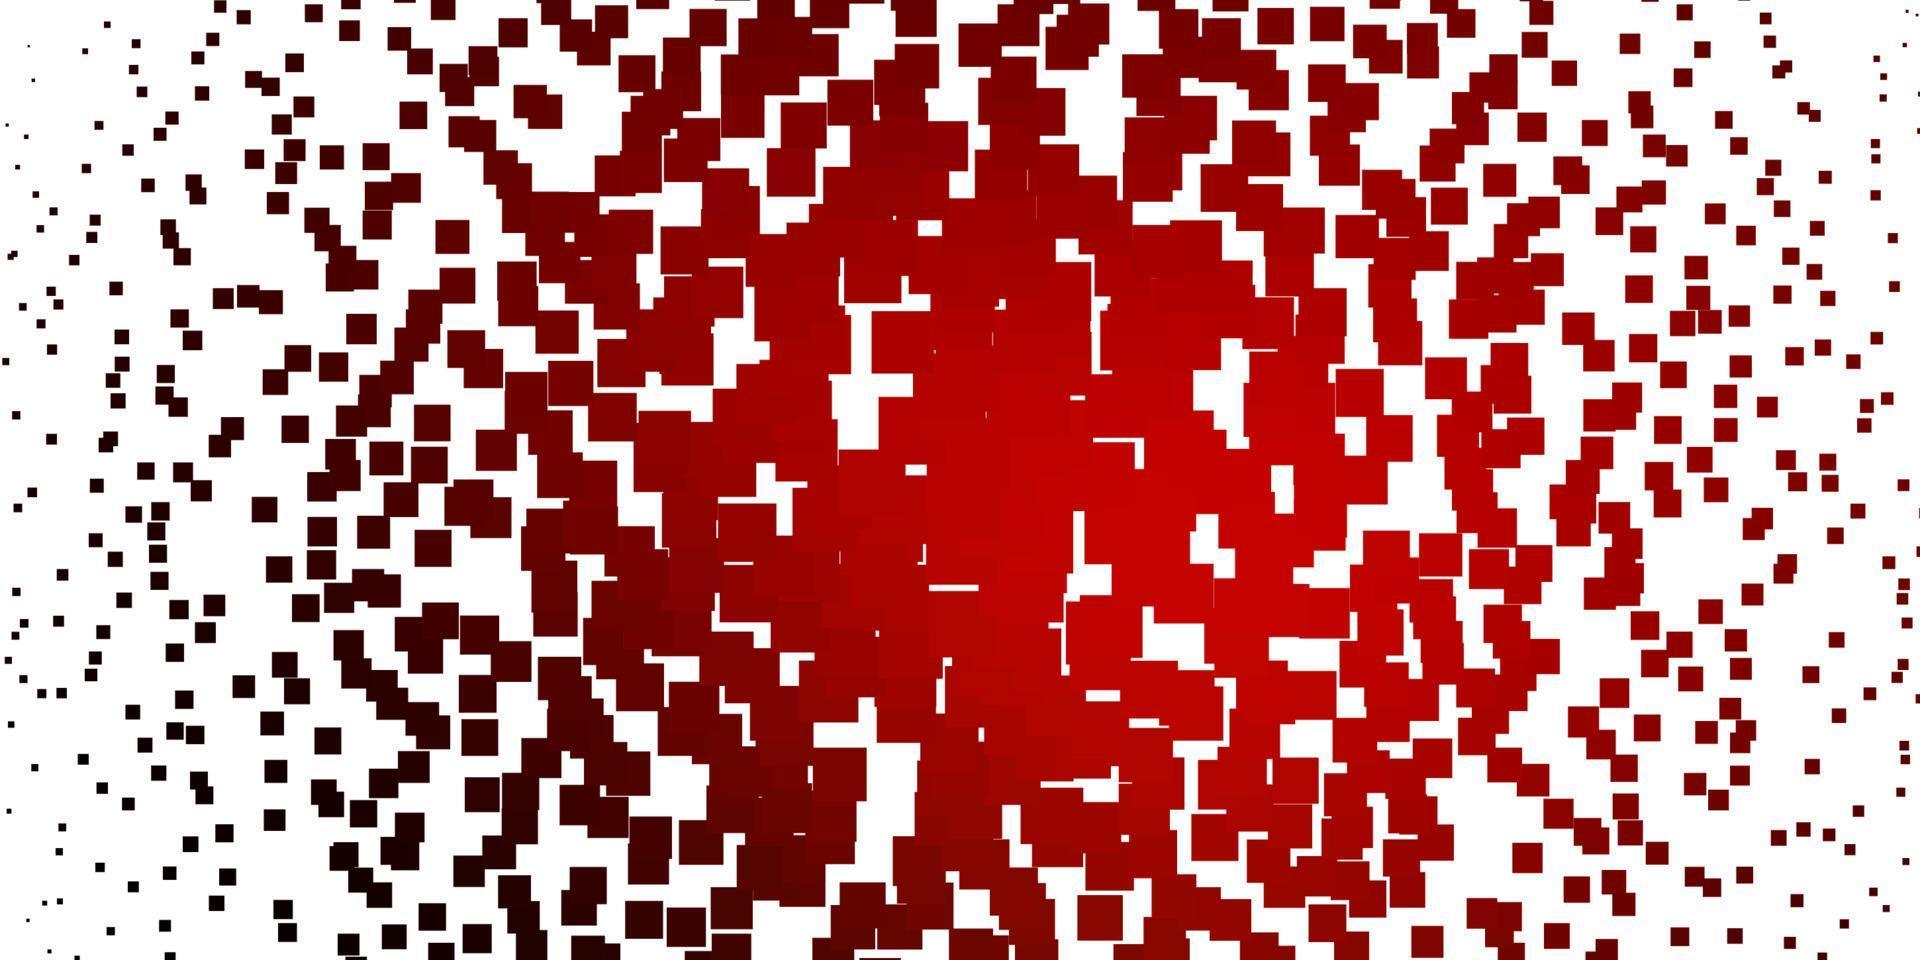 ljusröd vektorbakgrund med rektanglar. vektor